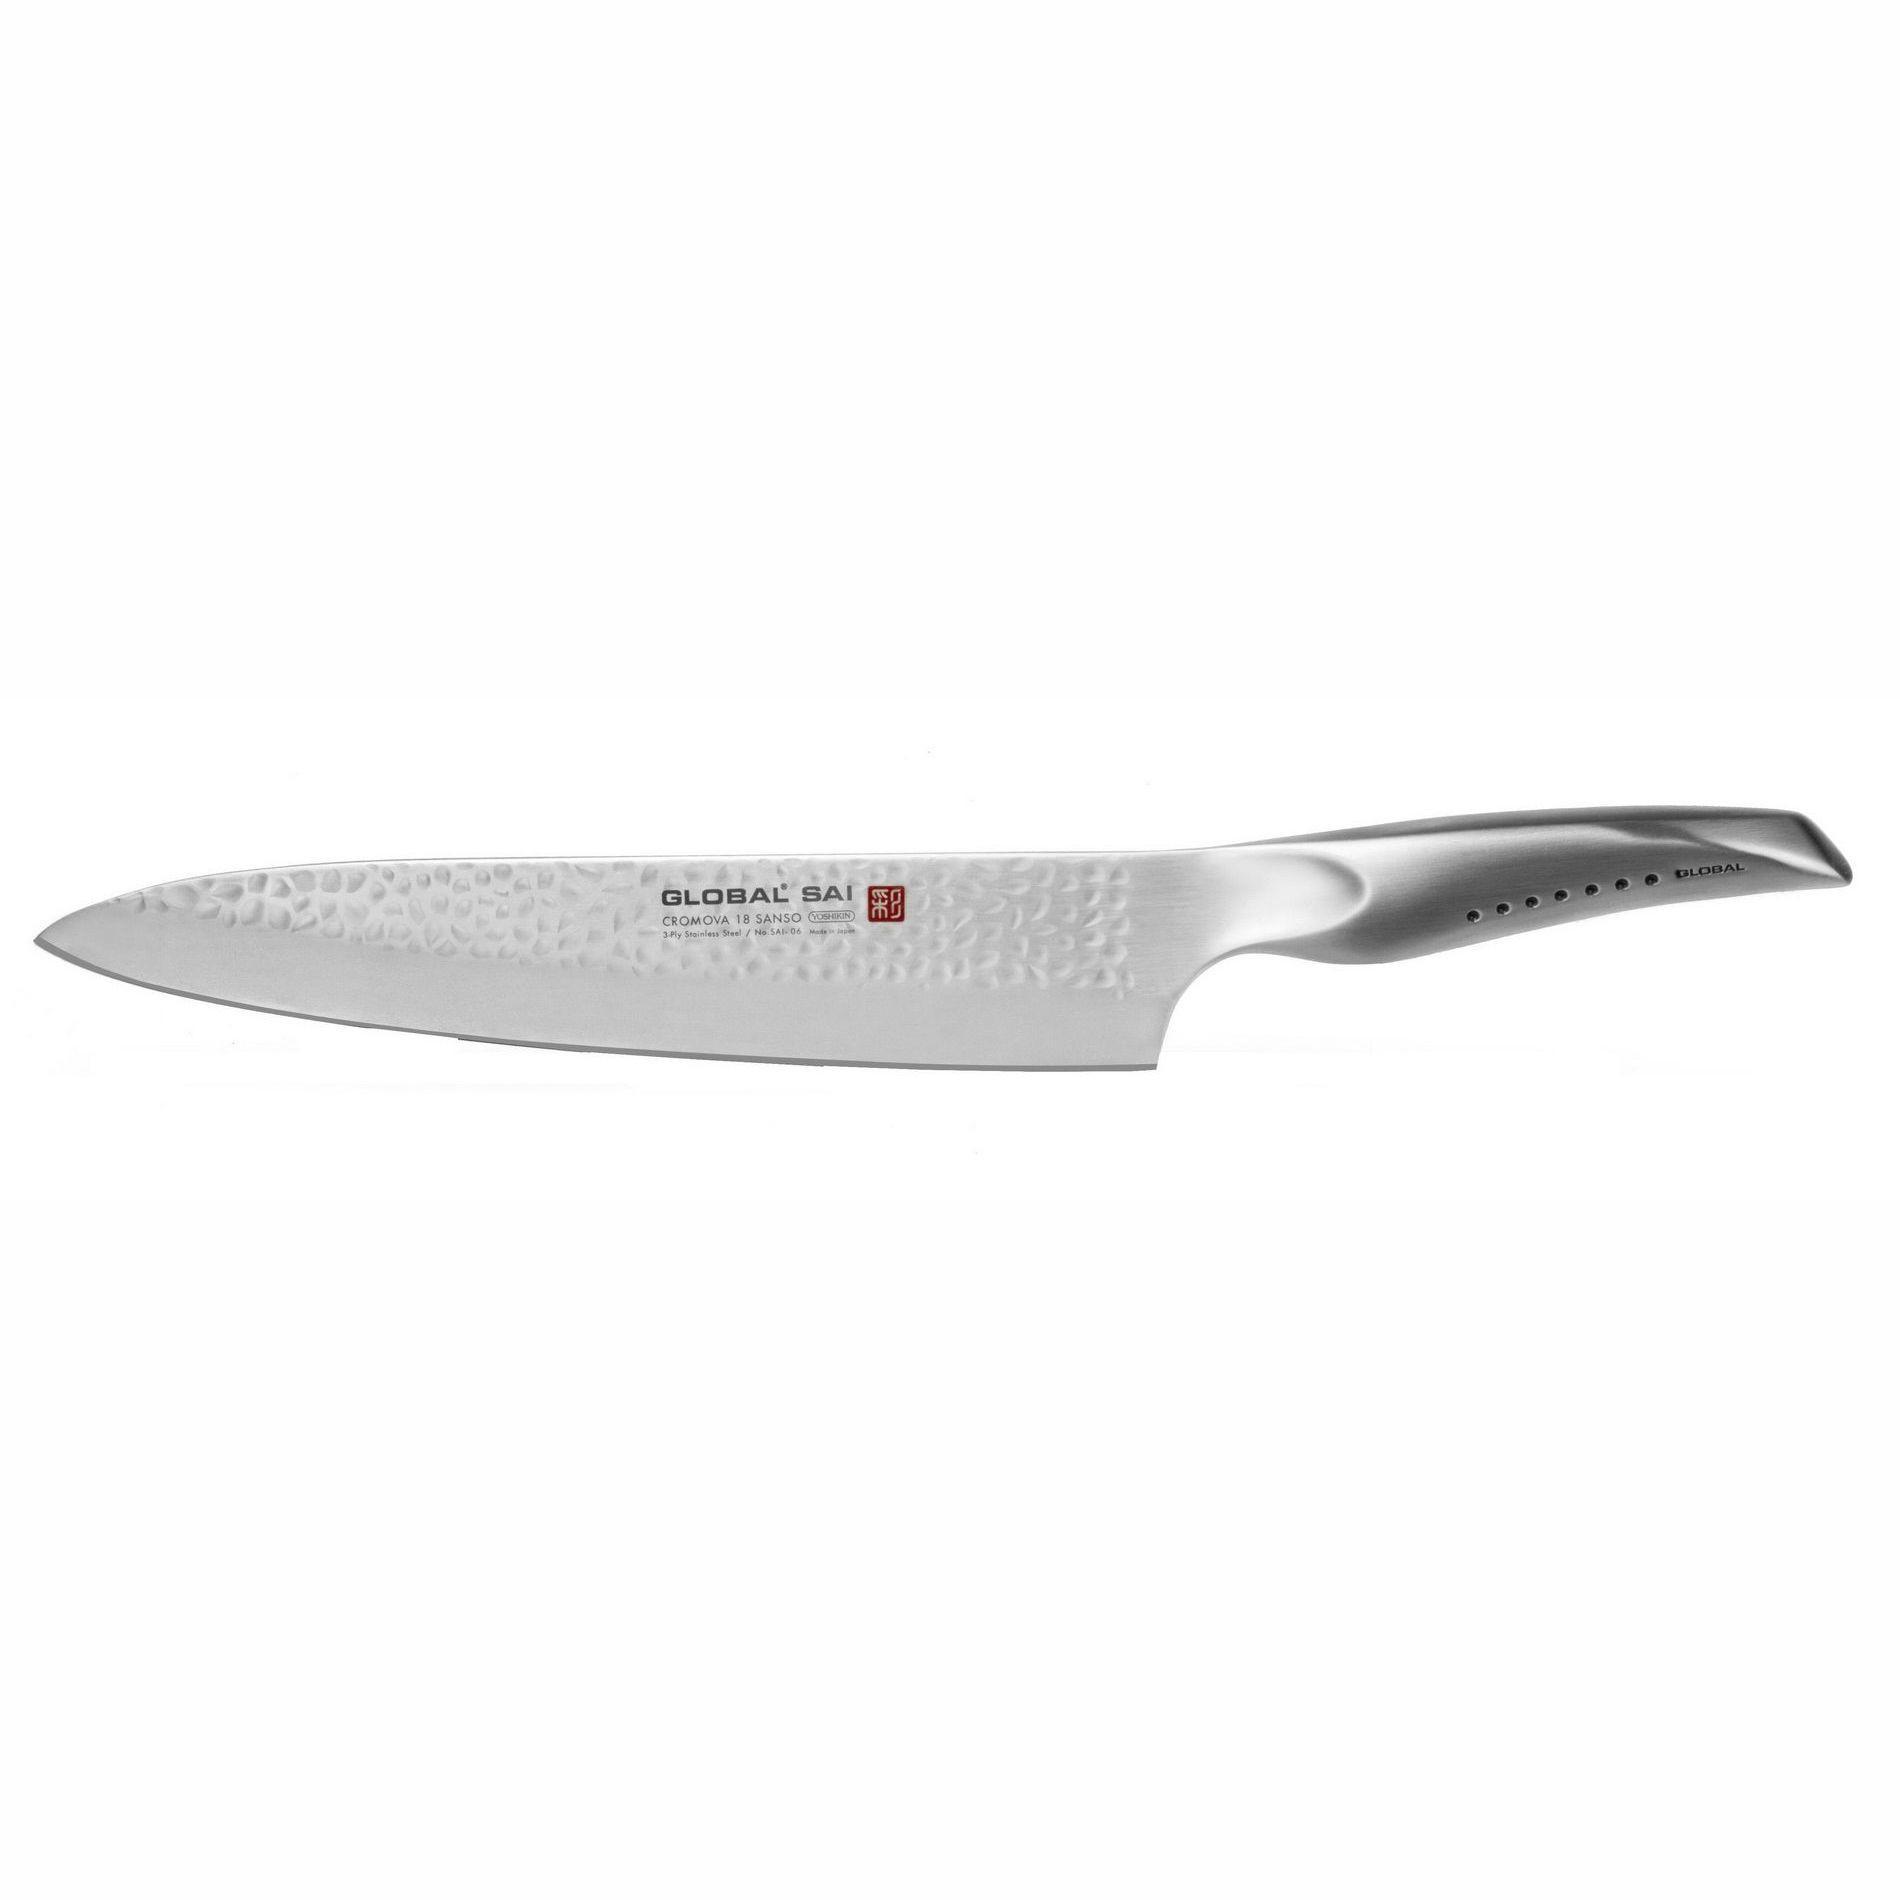 Global SAI 06 Cooking Knife, 25 cms 10 inches GLOBAL SAI